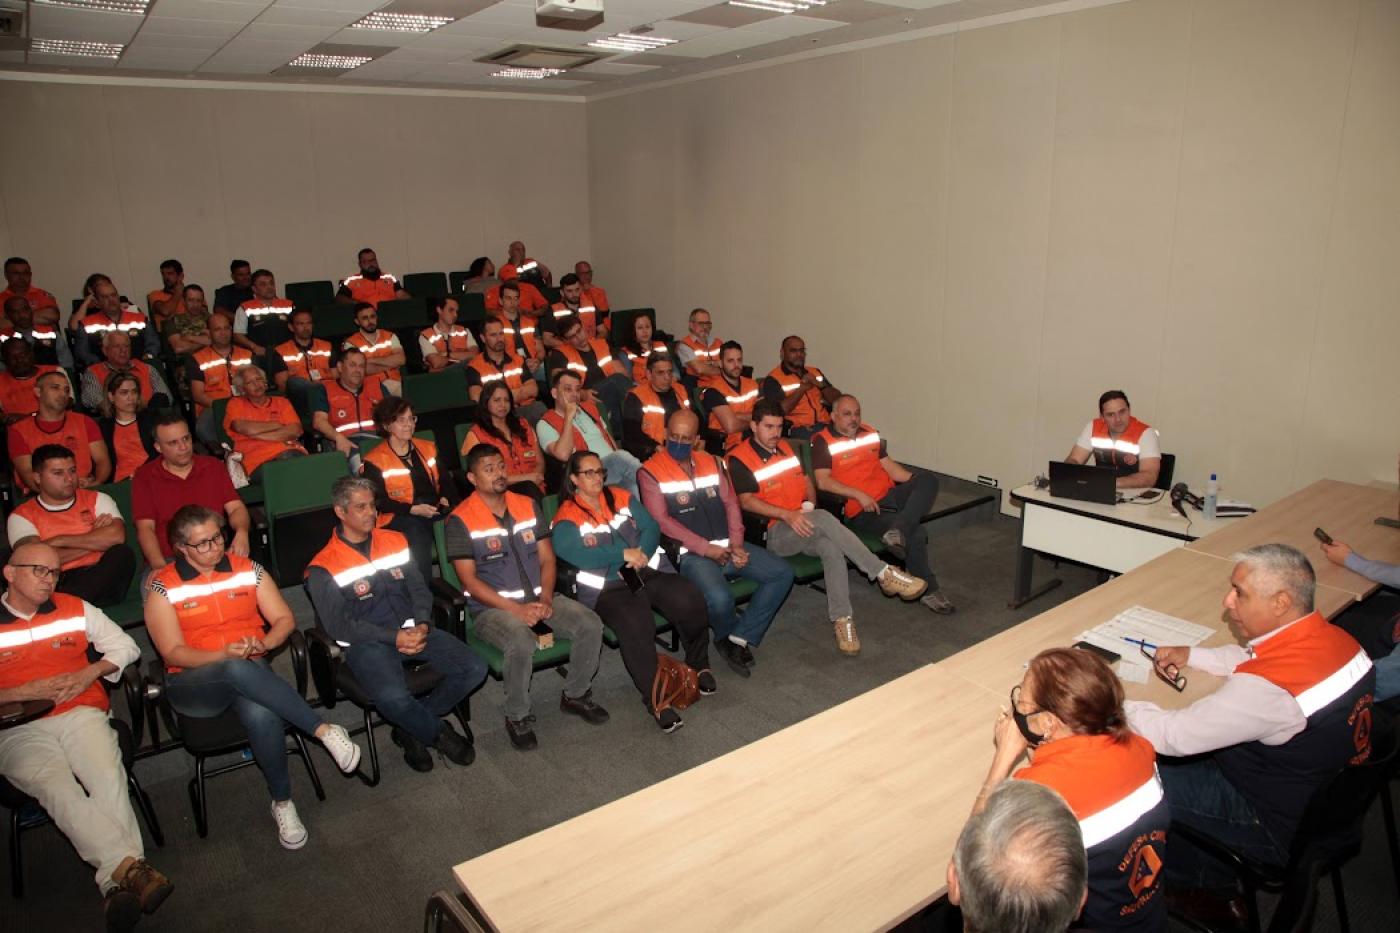 Representantes dos órgãos de Defesa Civil sentados durante treinamento em auditório. #paratodosverem